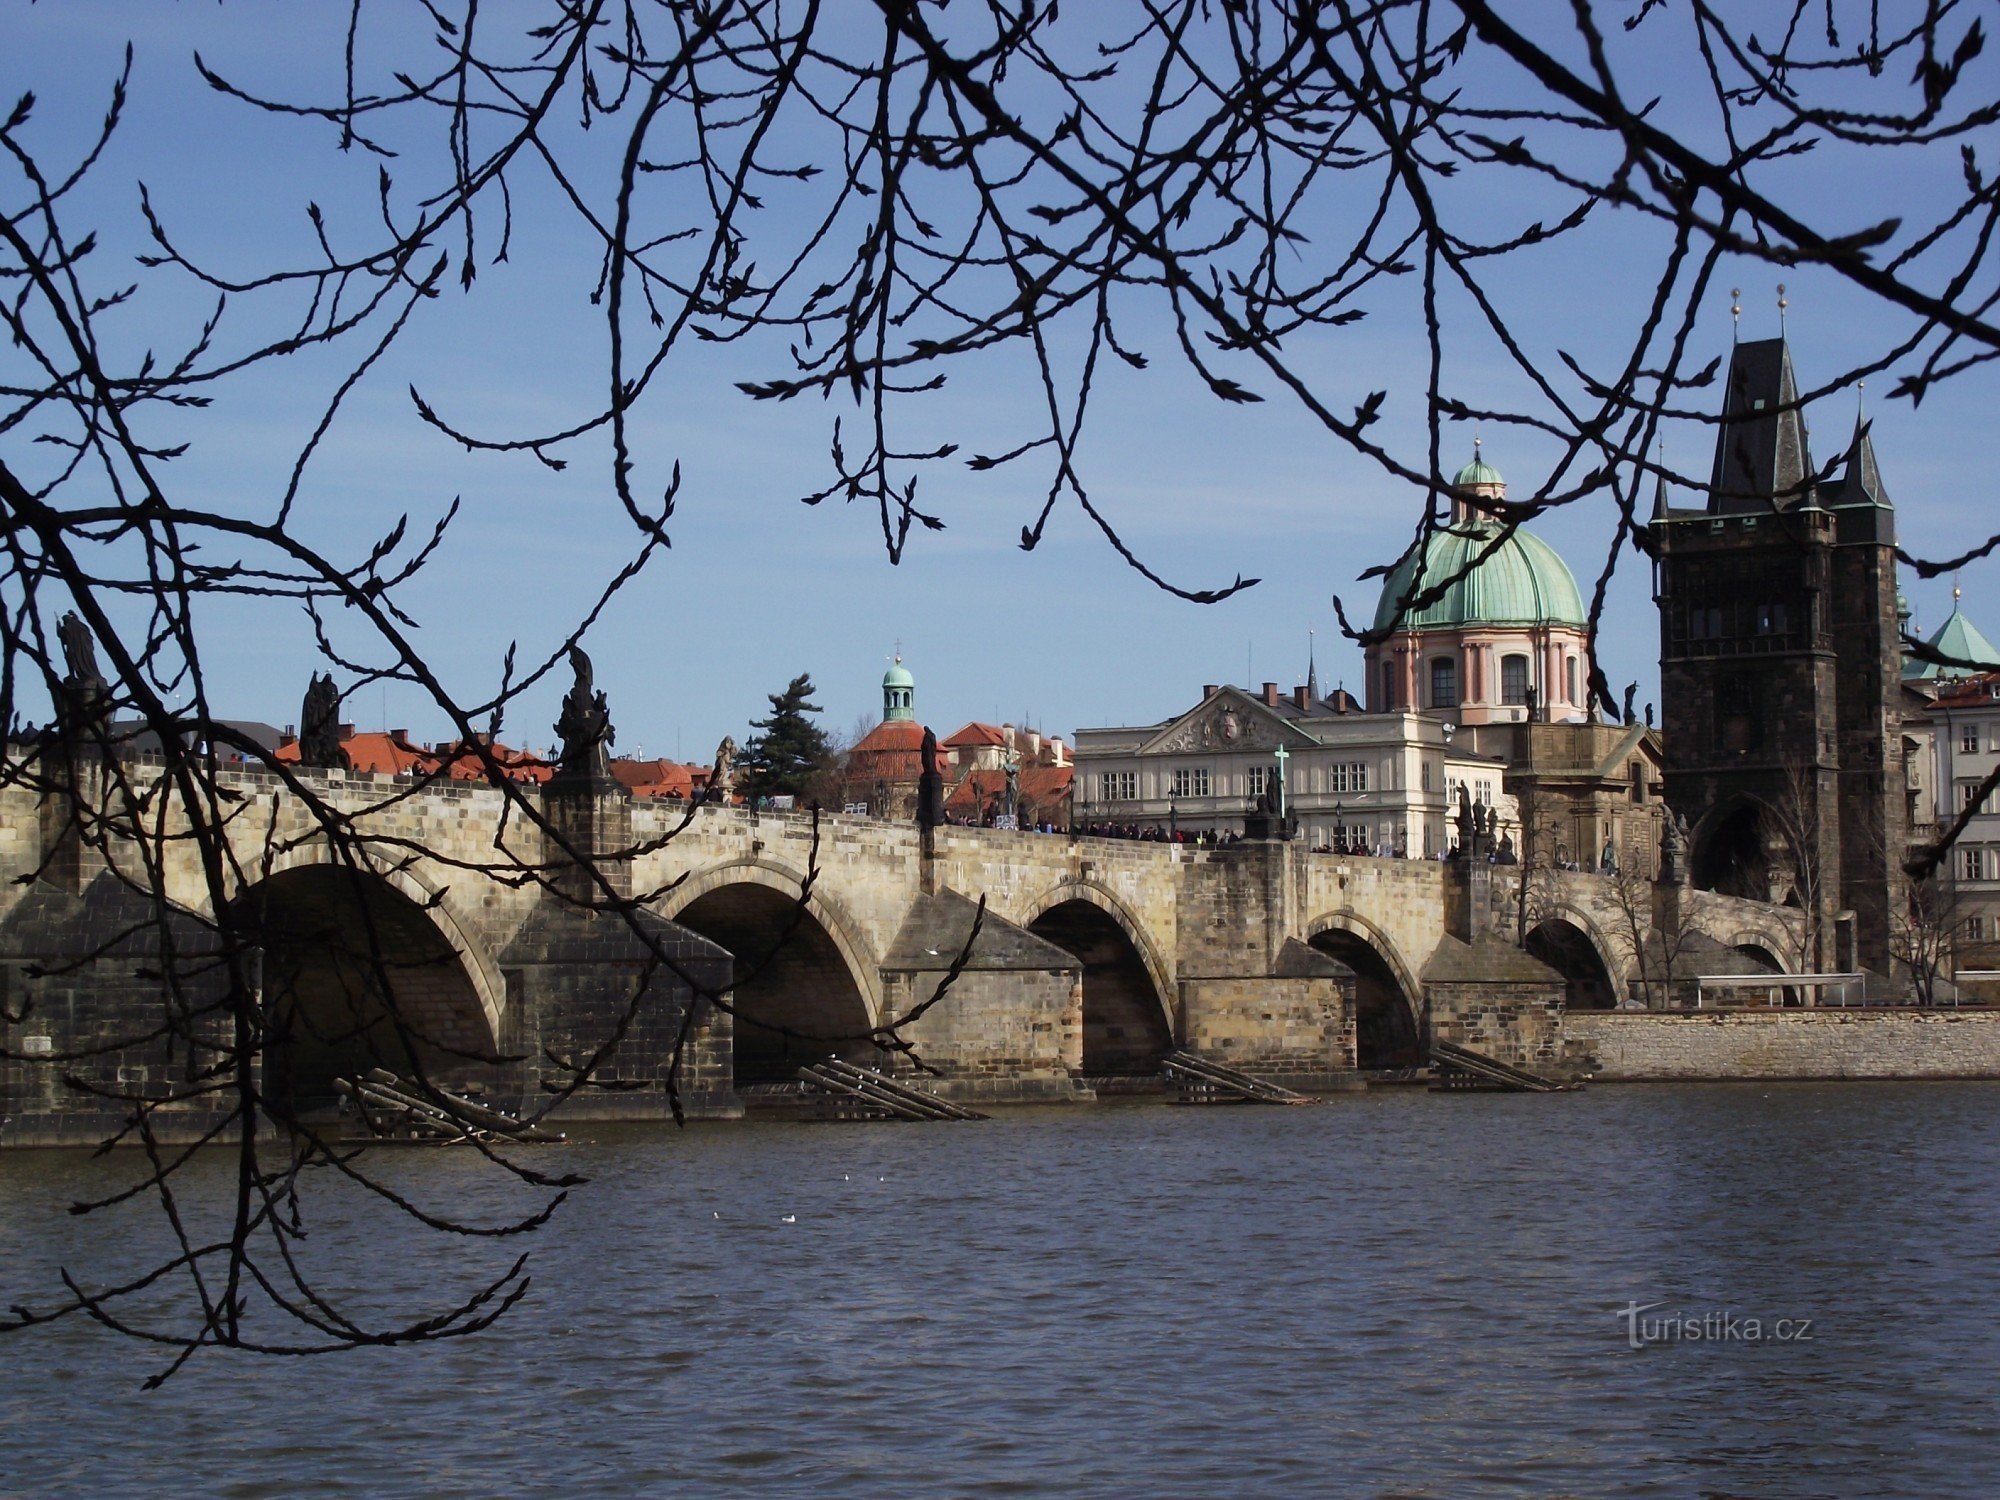 Érotisme sur le pont Charles (Prague - Tour du pont de la vieille ville)